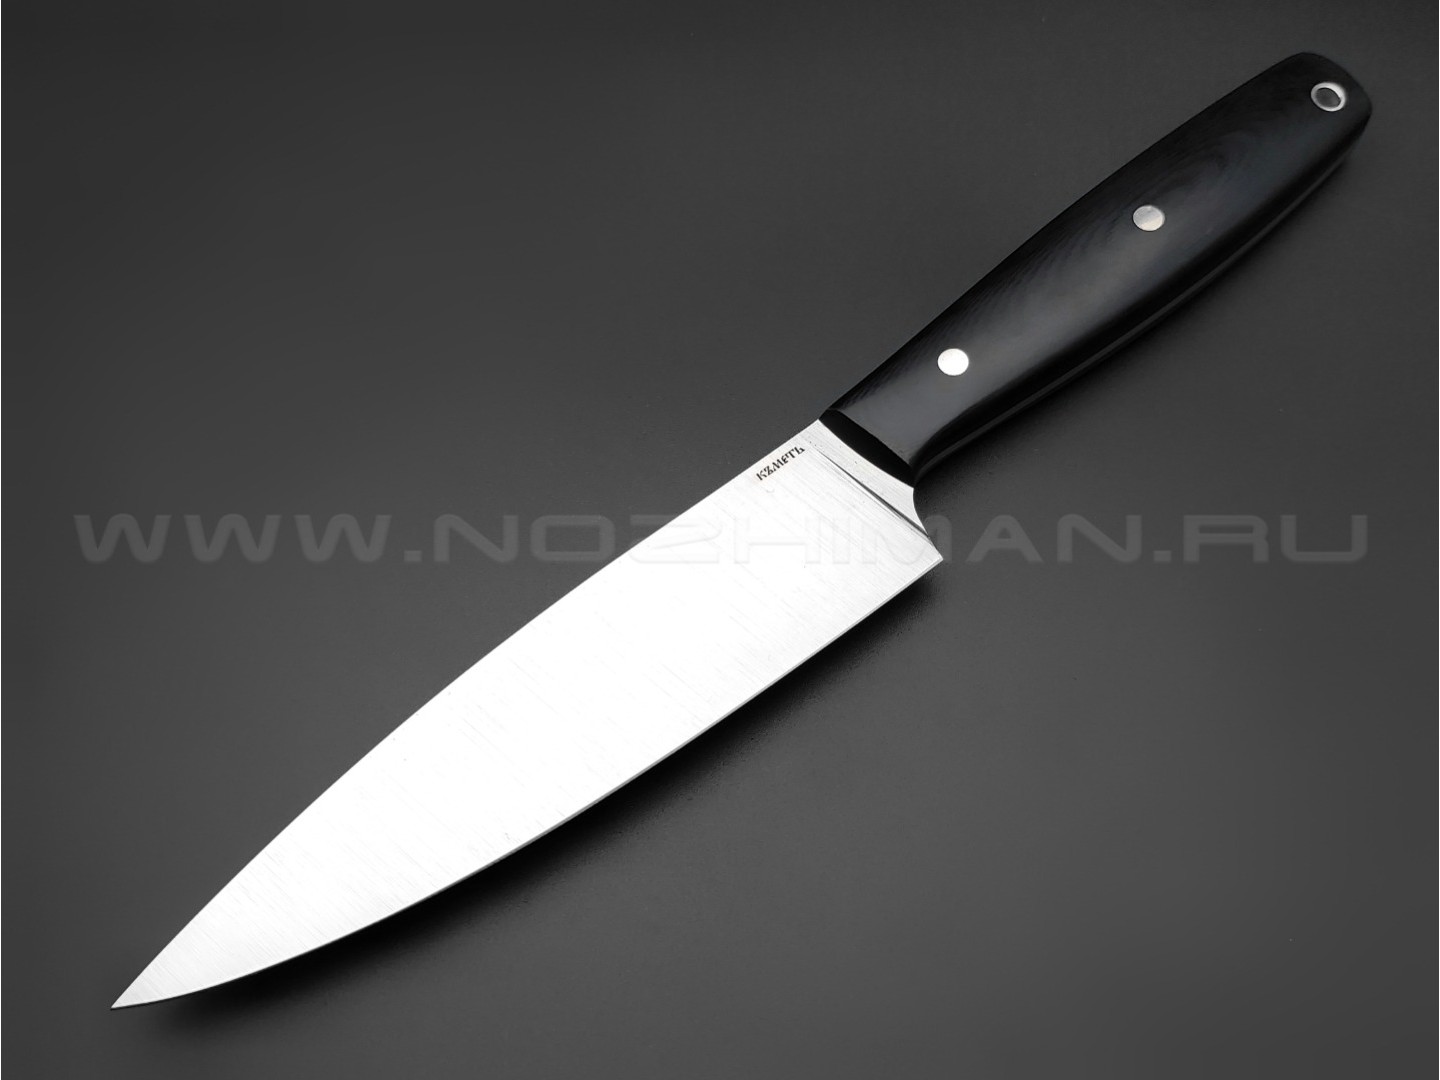 Кметь нож "Кухонный №1" сталь SuCo, рукоять G10 black